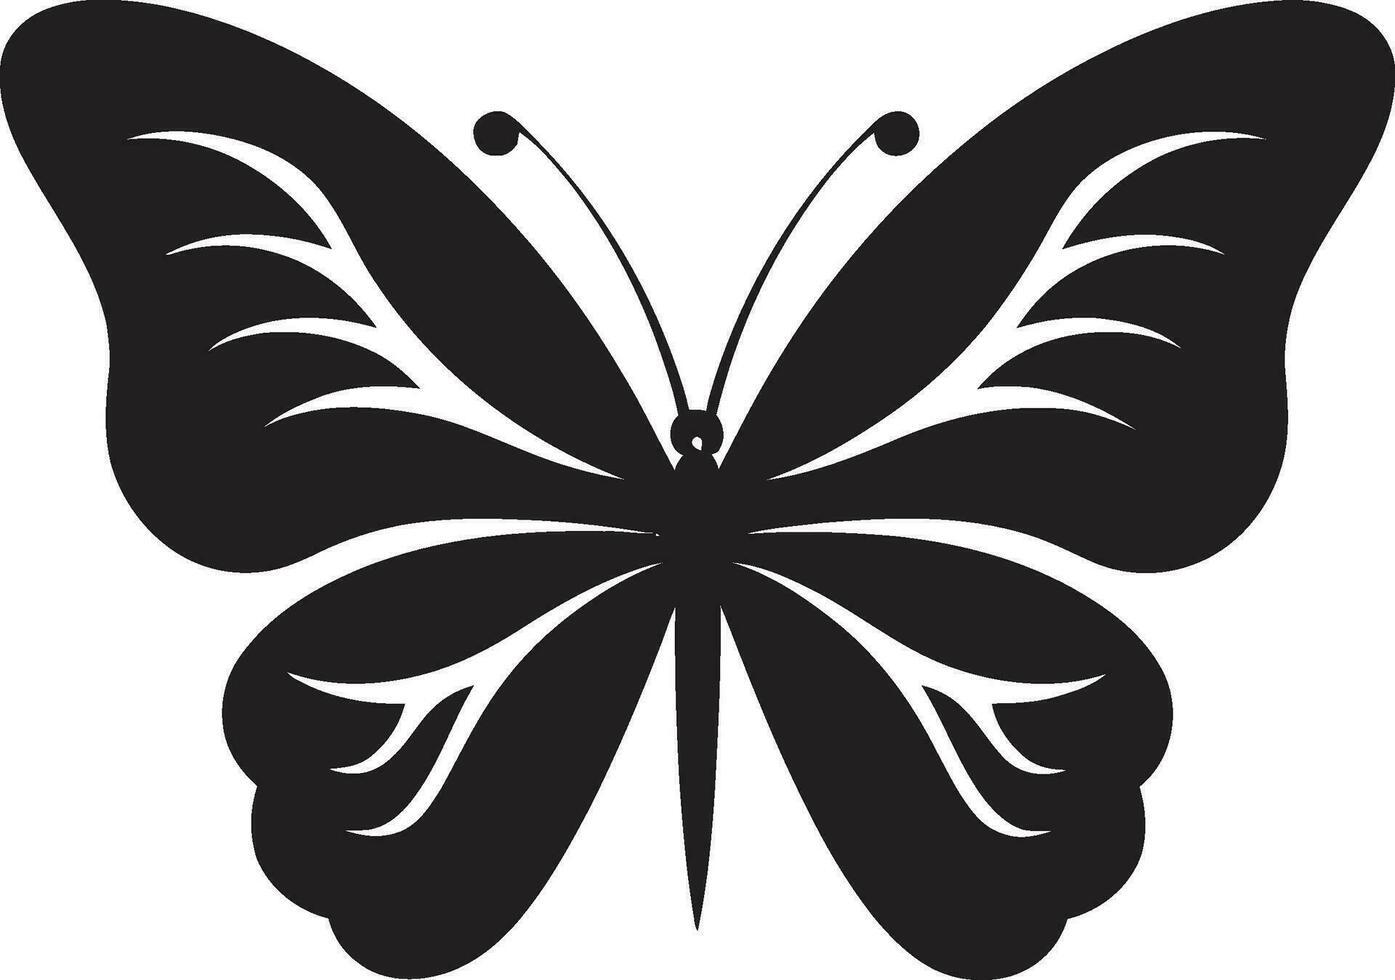 fjäril silhuett en modern klassisk i svart elegans i skuggor fjäril symbol vektor